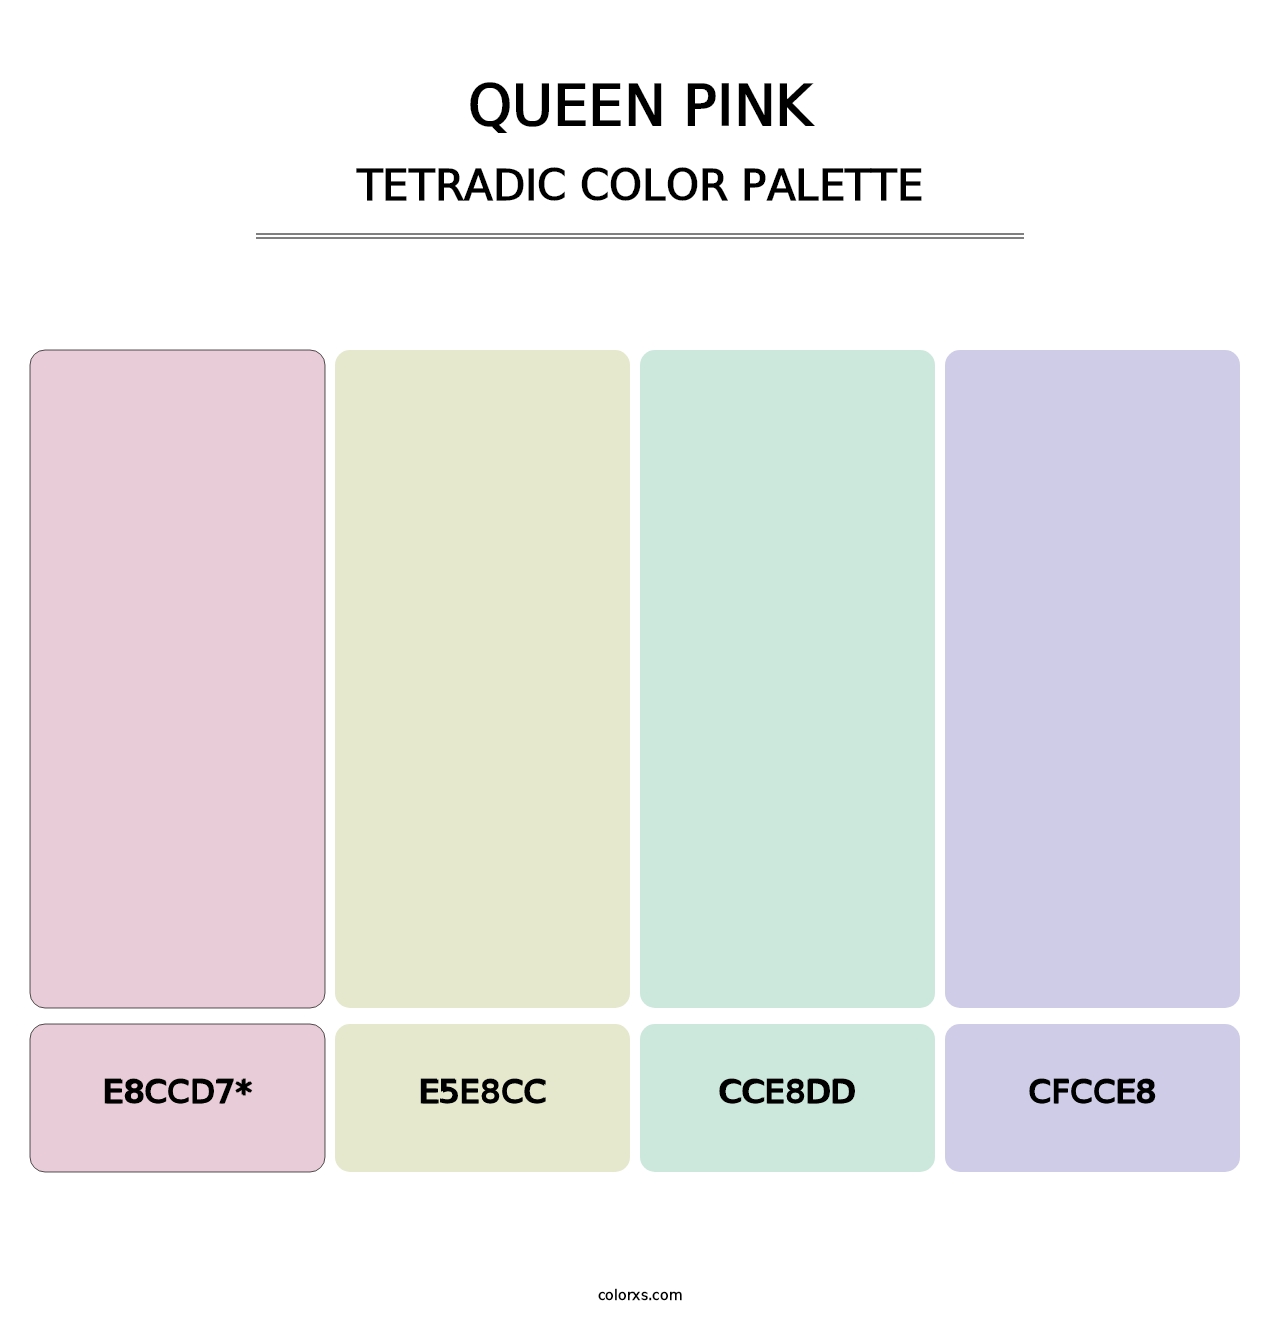 Queen Pink - Tetradic Color Palette